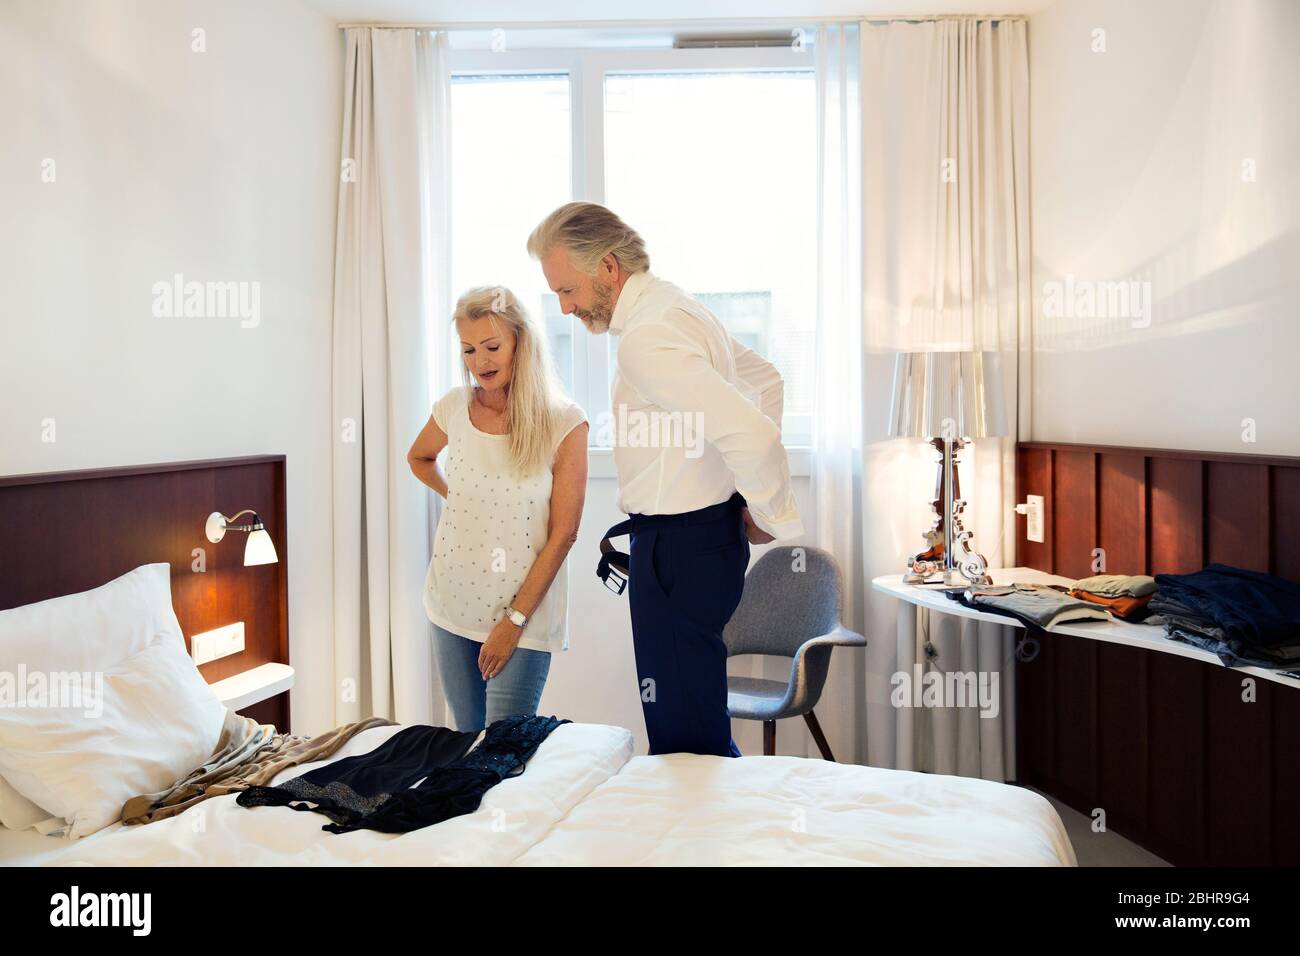 Un couple debout dans une chambre d'hôtel qui regarde les vêtements posés sur le lit. Banque D'Images